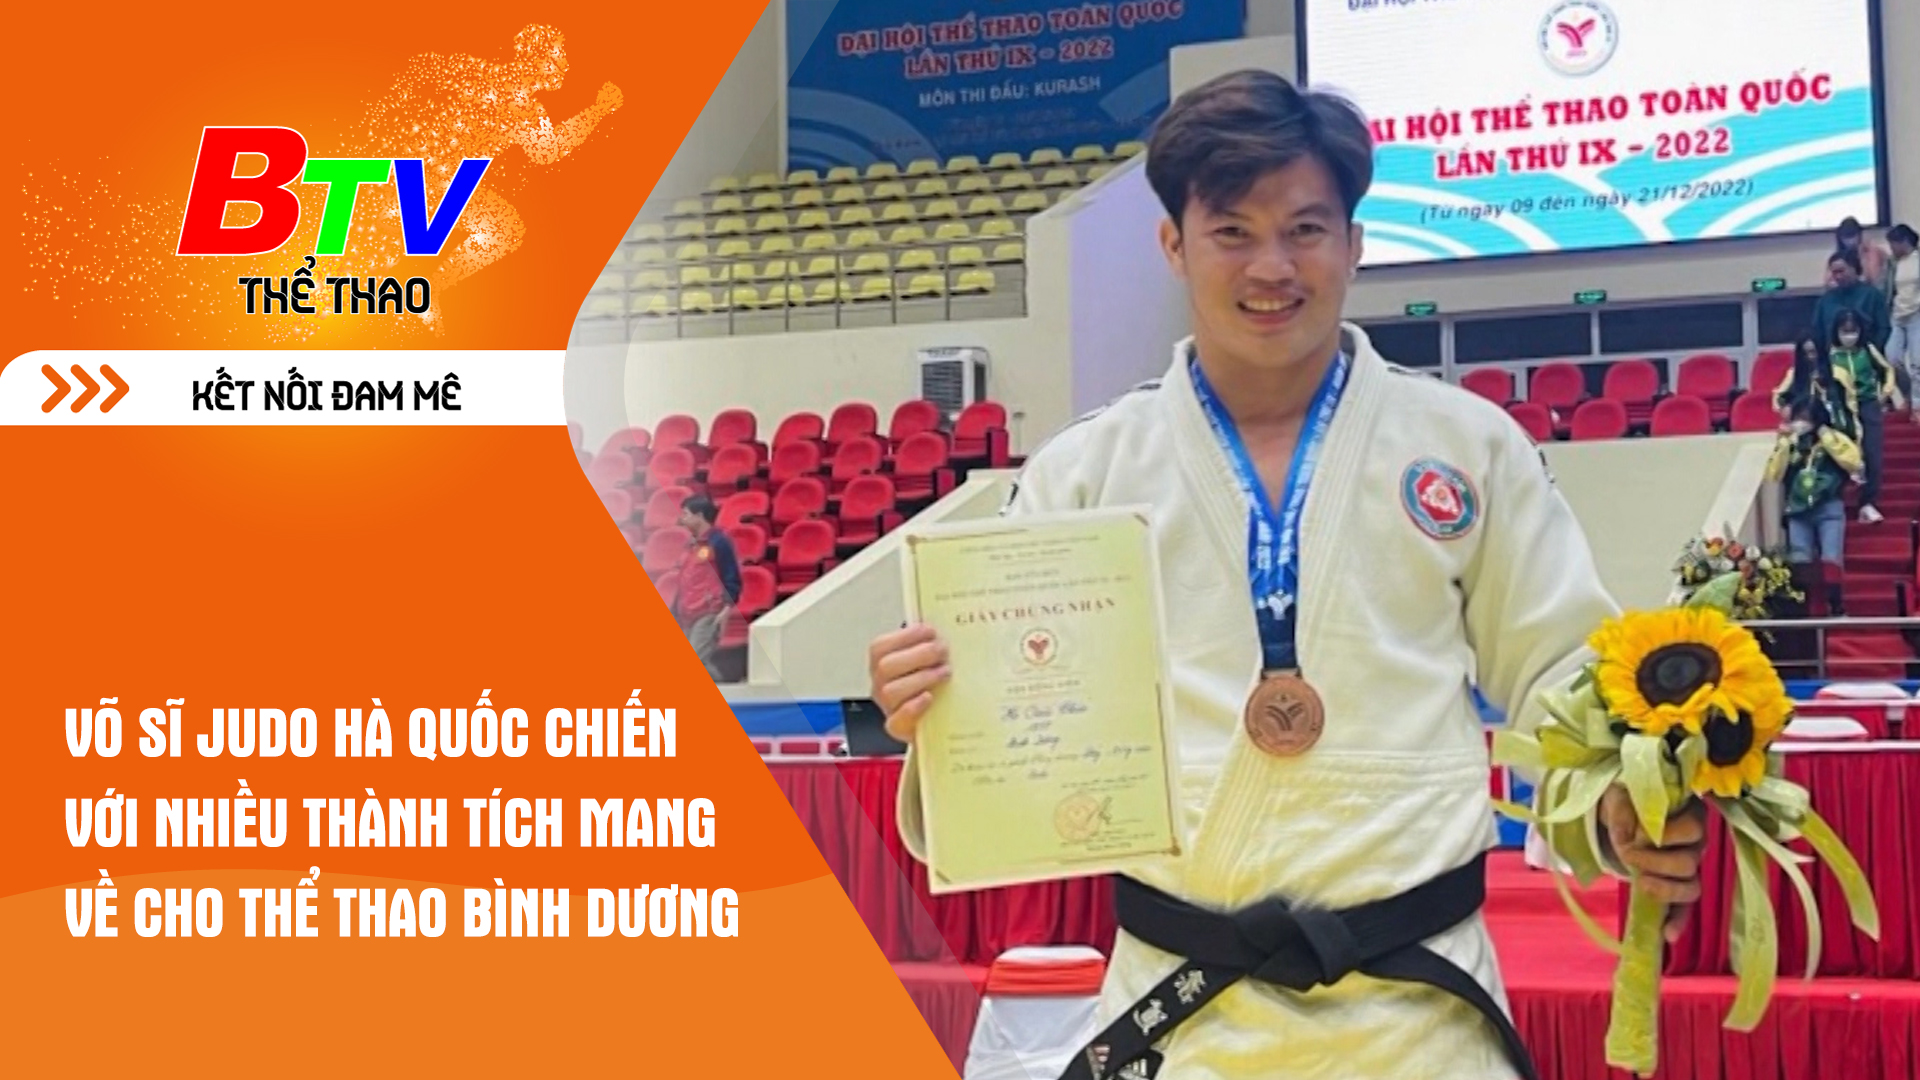 Võ sĩ Judo Hà Quốc Chiến với nhiều thành tích mang về cho thể thao Bình Dương